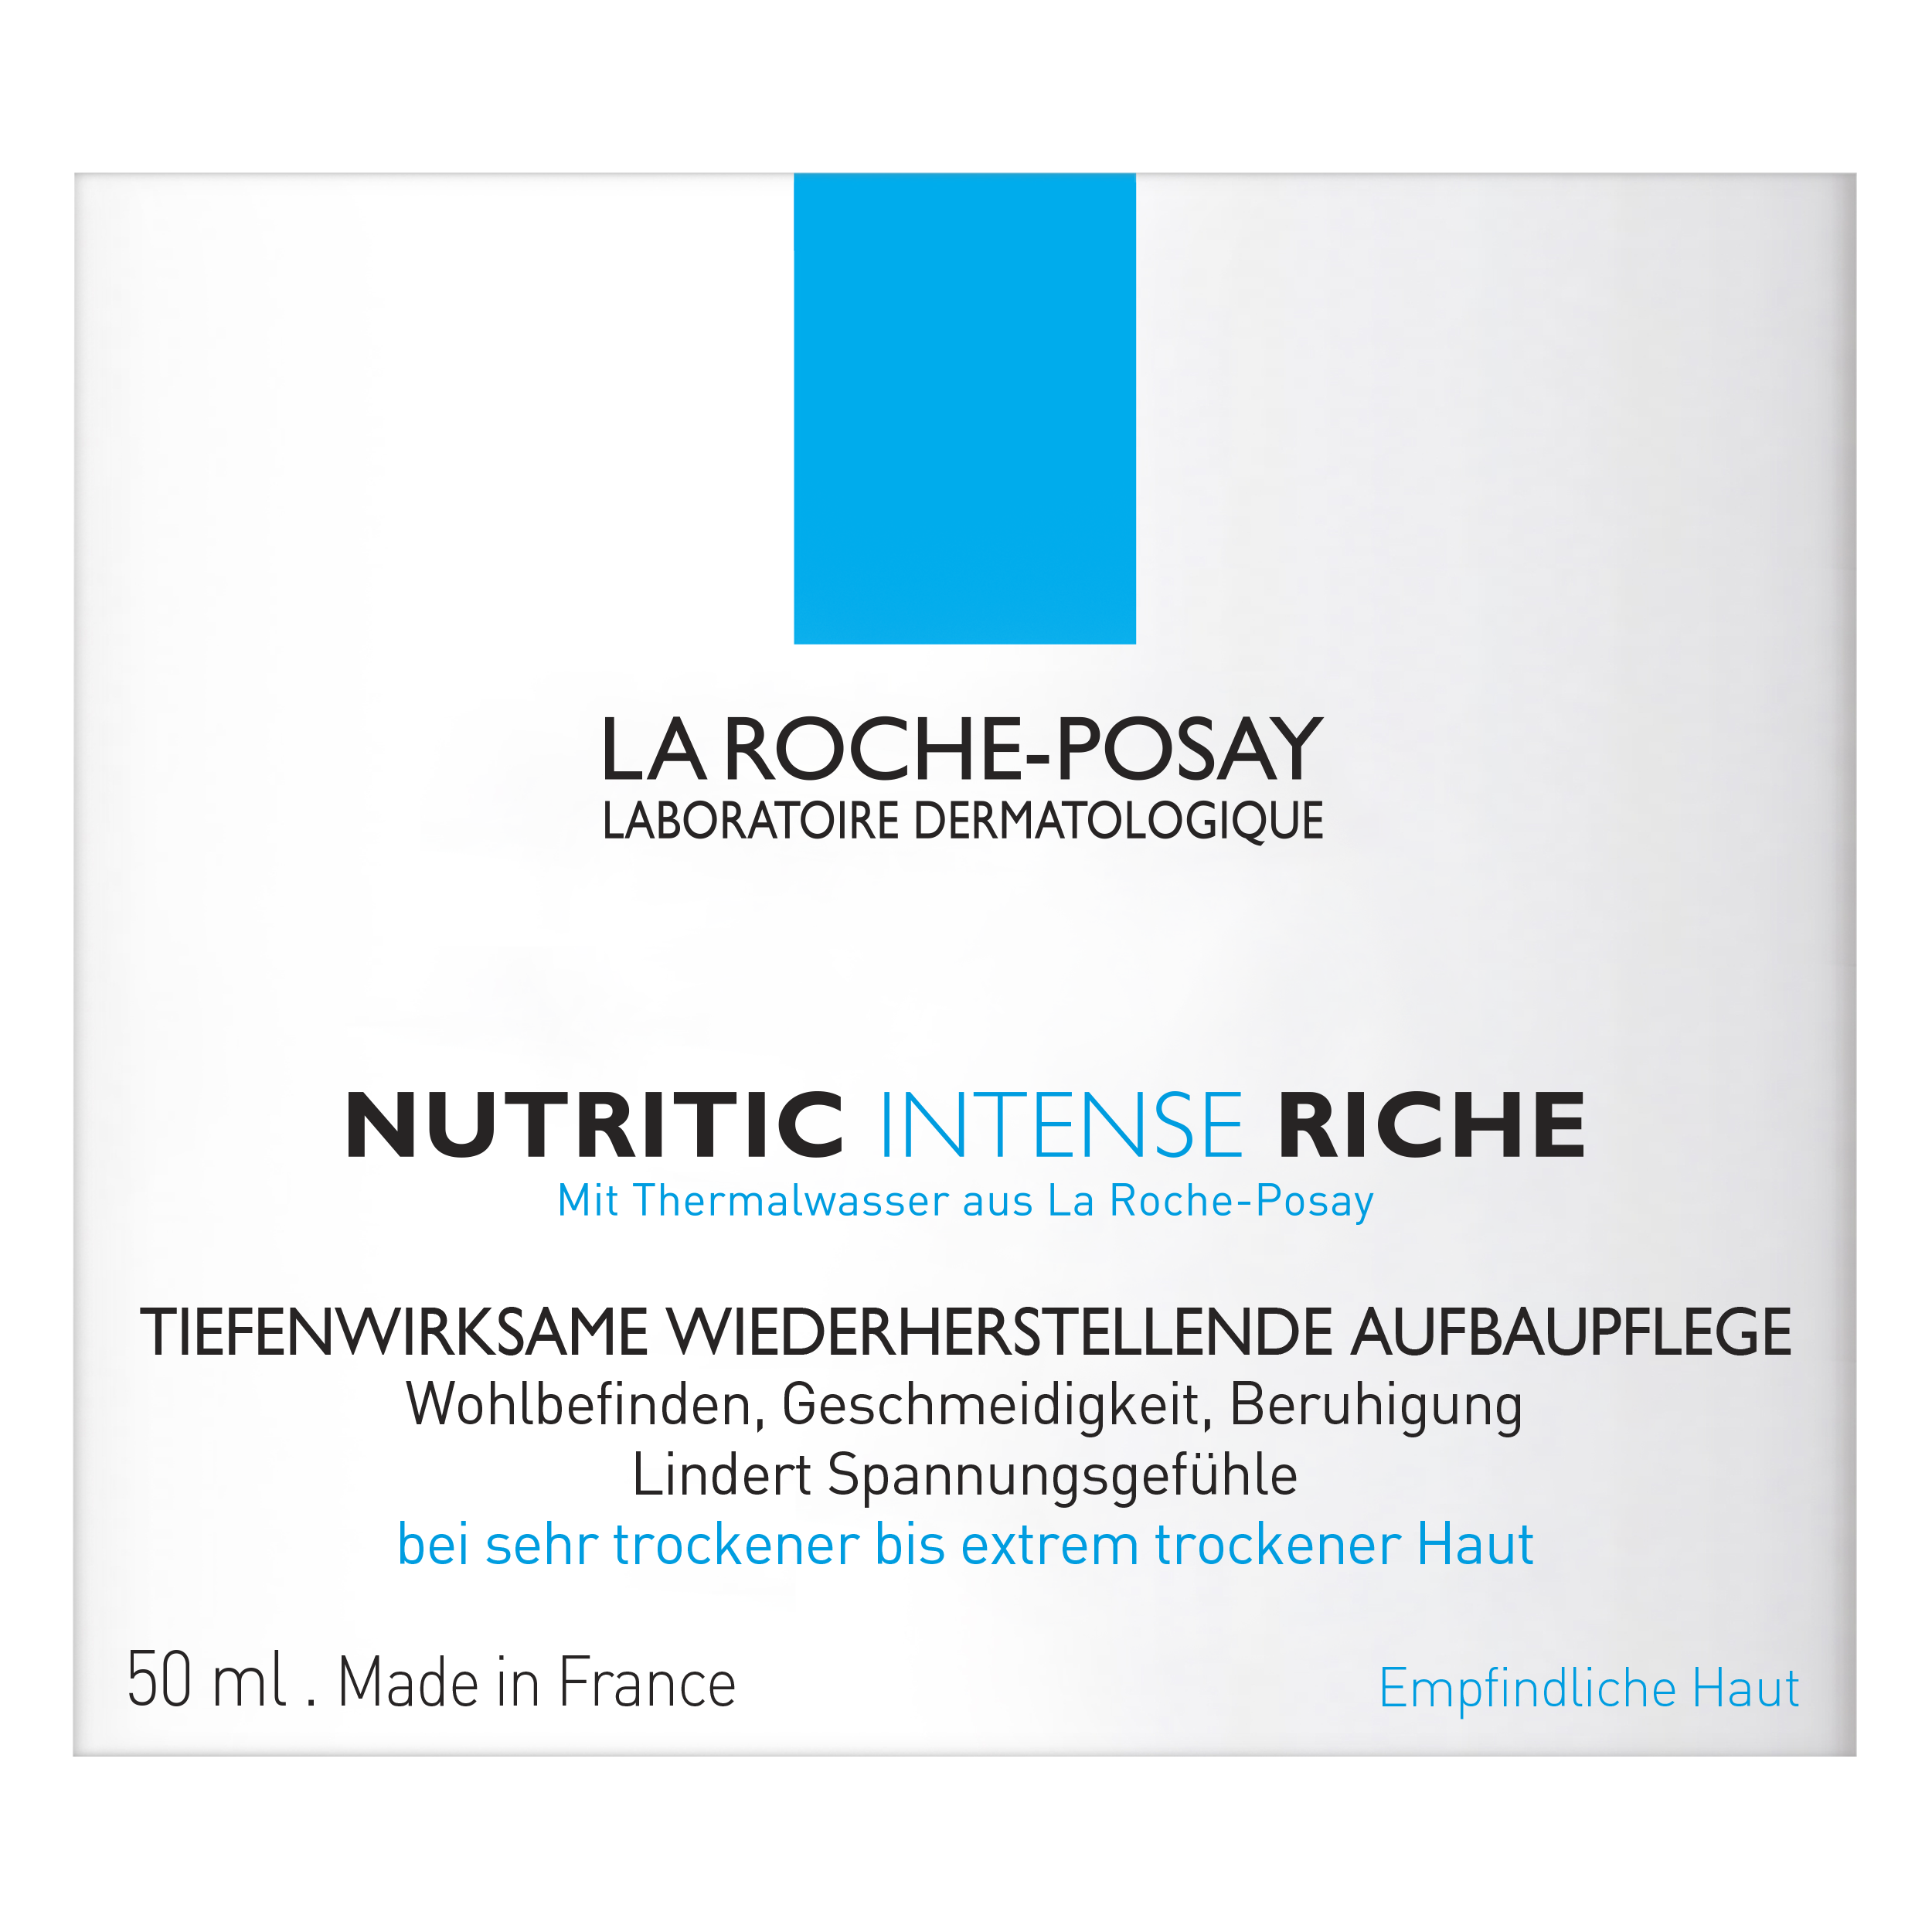 La Roche-Posay Nutritic, Bild 2 von 4